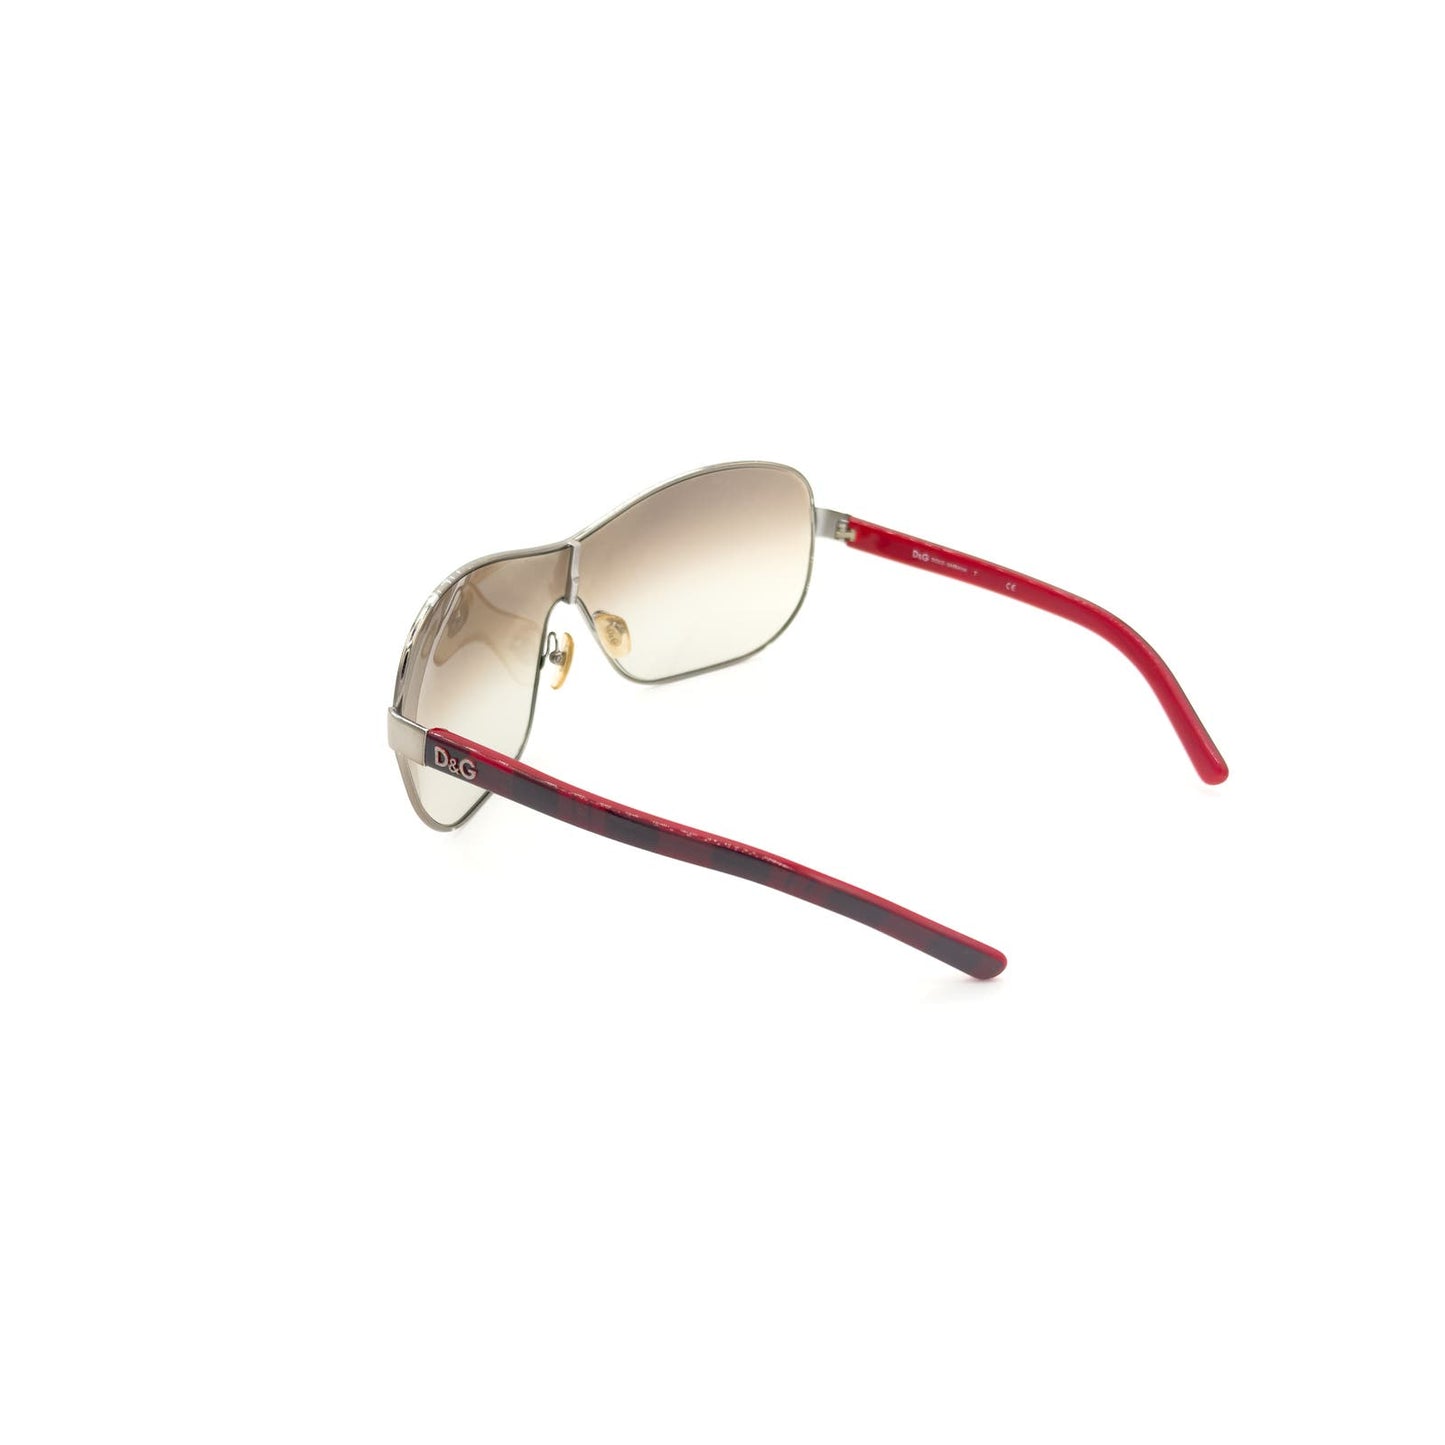 Plaid Shield Sunglasses